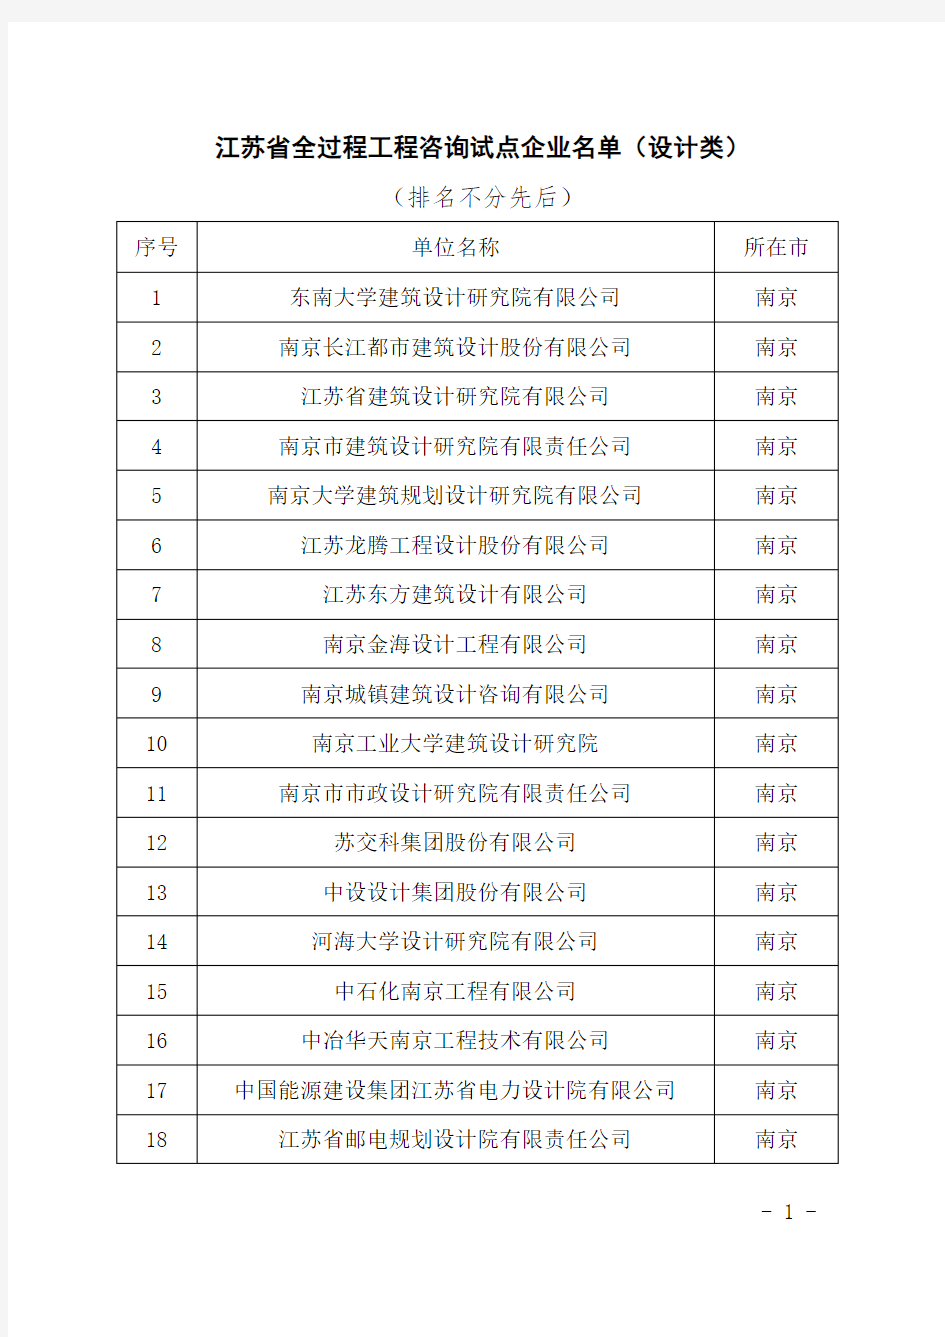 江苏省全过程工程咨询试点企业名单(设计类)